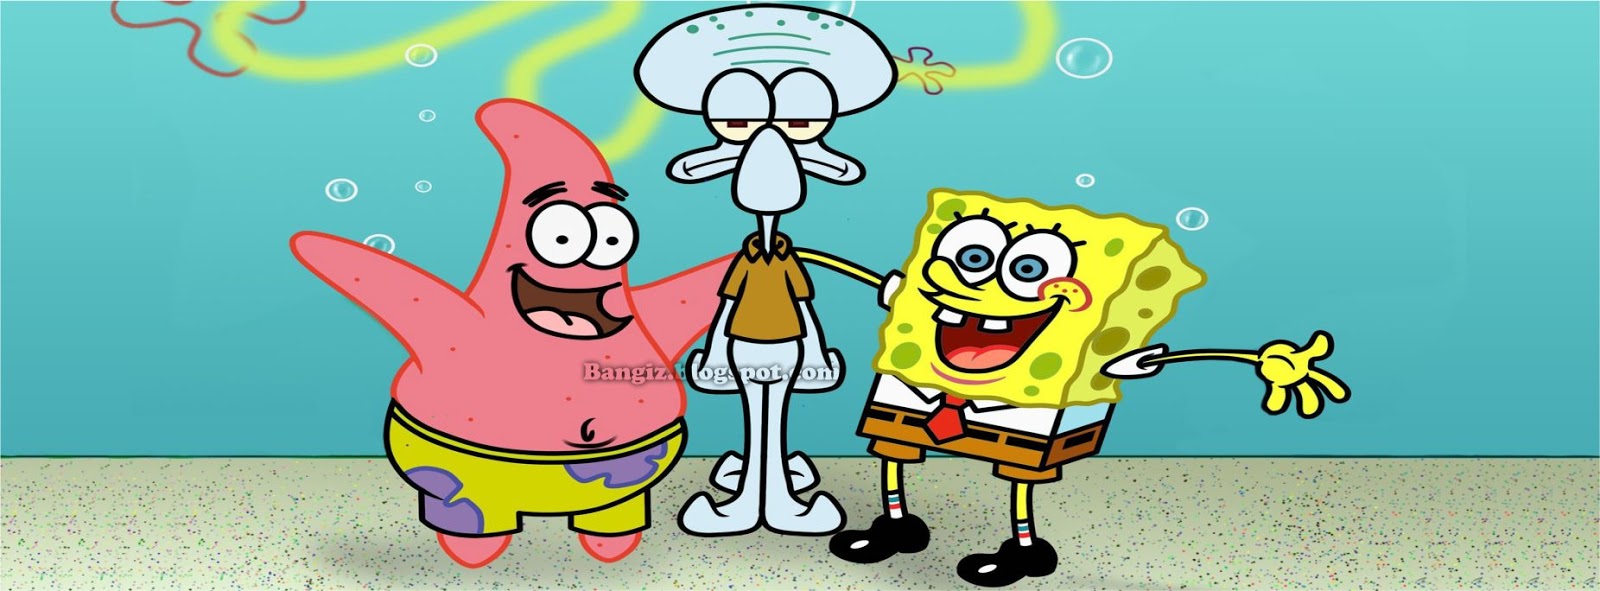 25 Foto Sampul Spongebob Terbaru  Bangiz